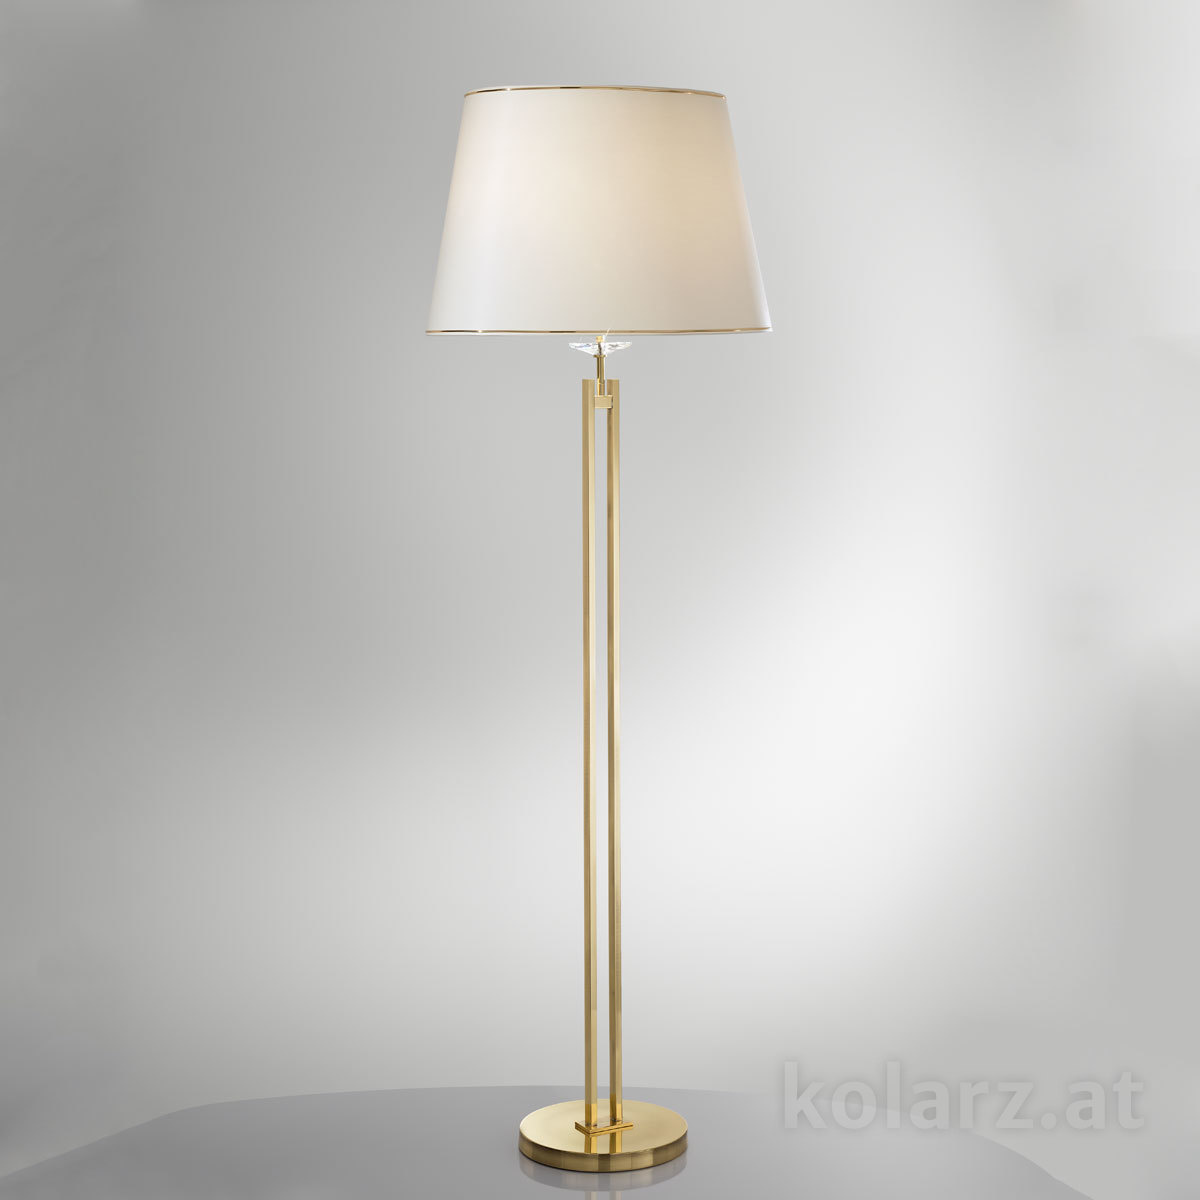 Kristall- fürs Esszimmer von KOLARZ Leuchten Bodenleuchte,  floor lamp - Imperial 330.42.8C